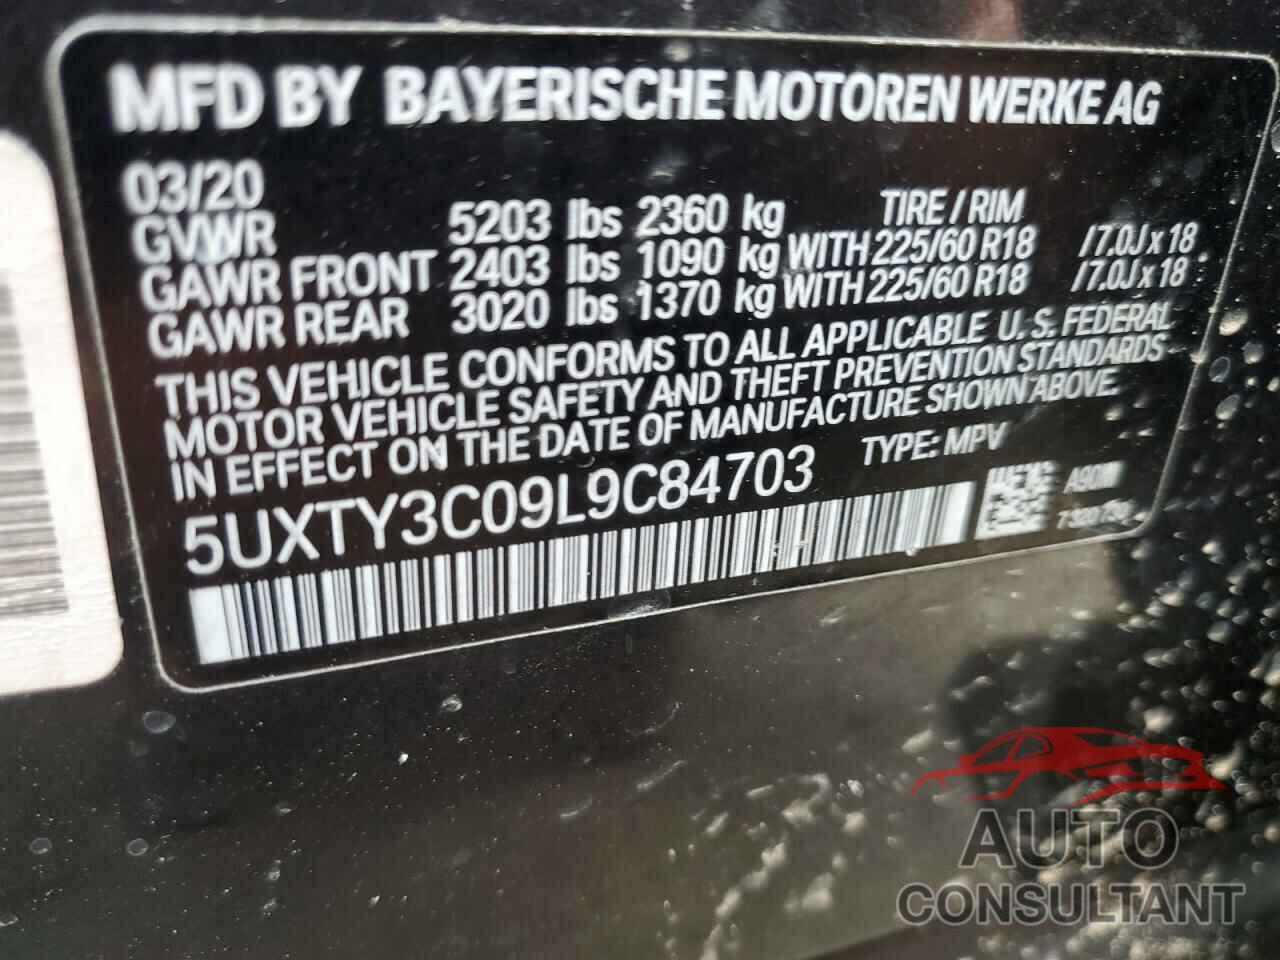 BMW X3 2020 - 5UXTY3C09L9C84703